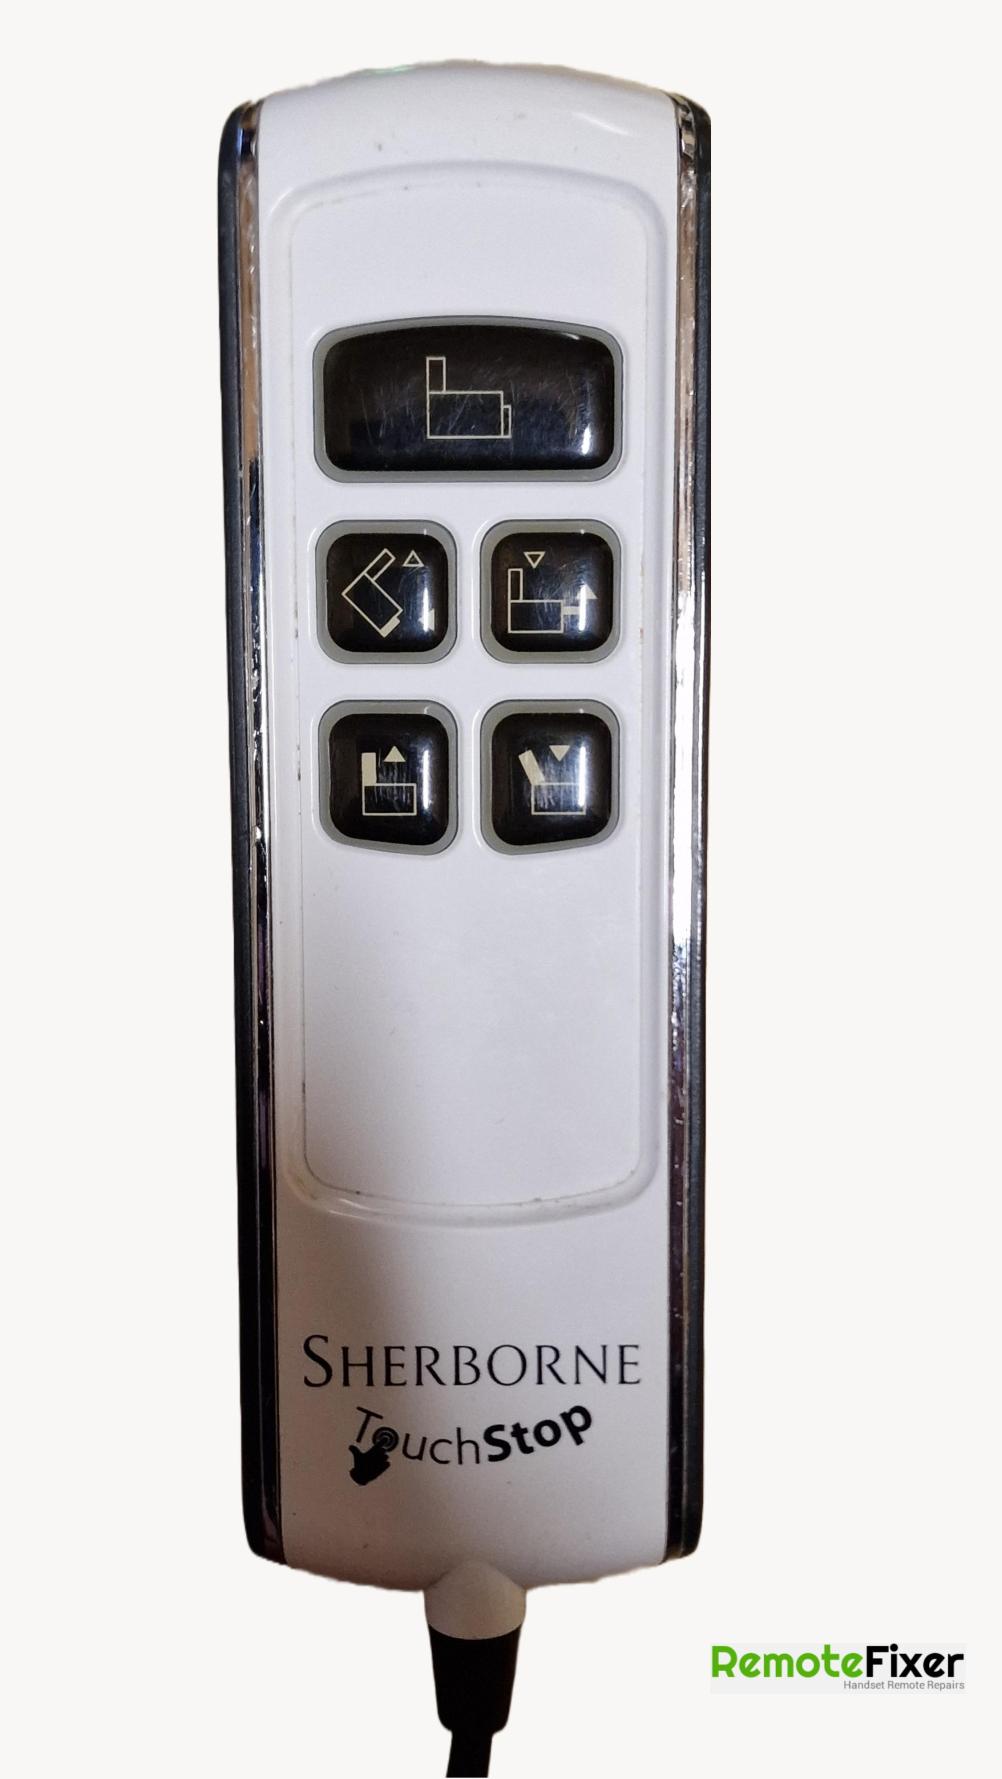 Sherborne white Remote Control - Front Image